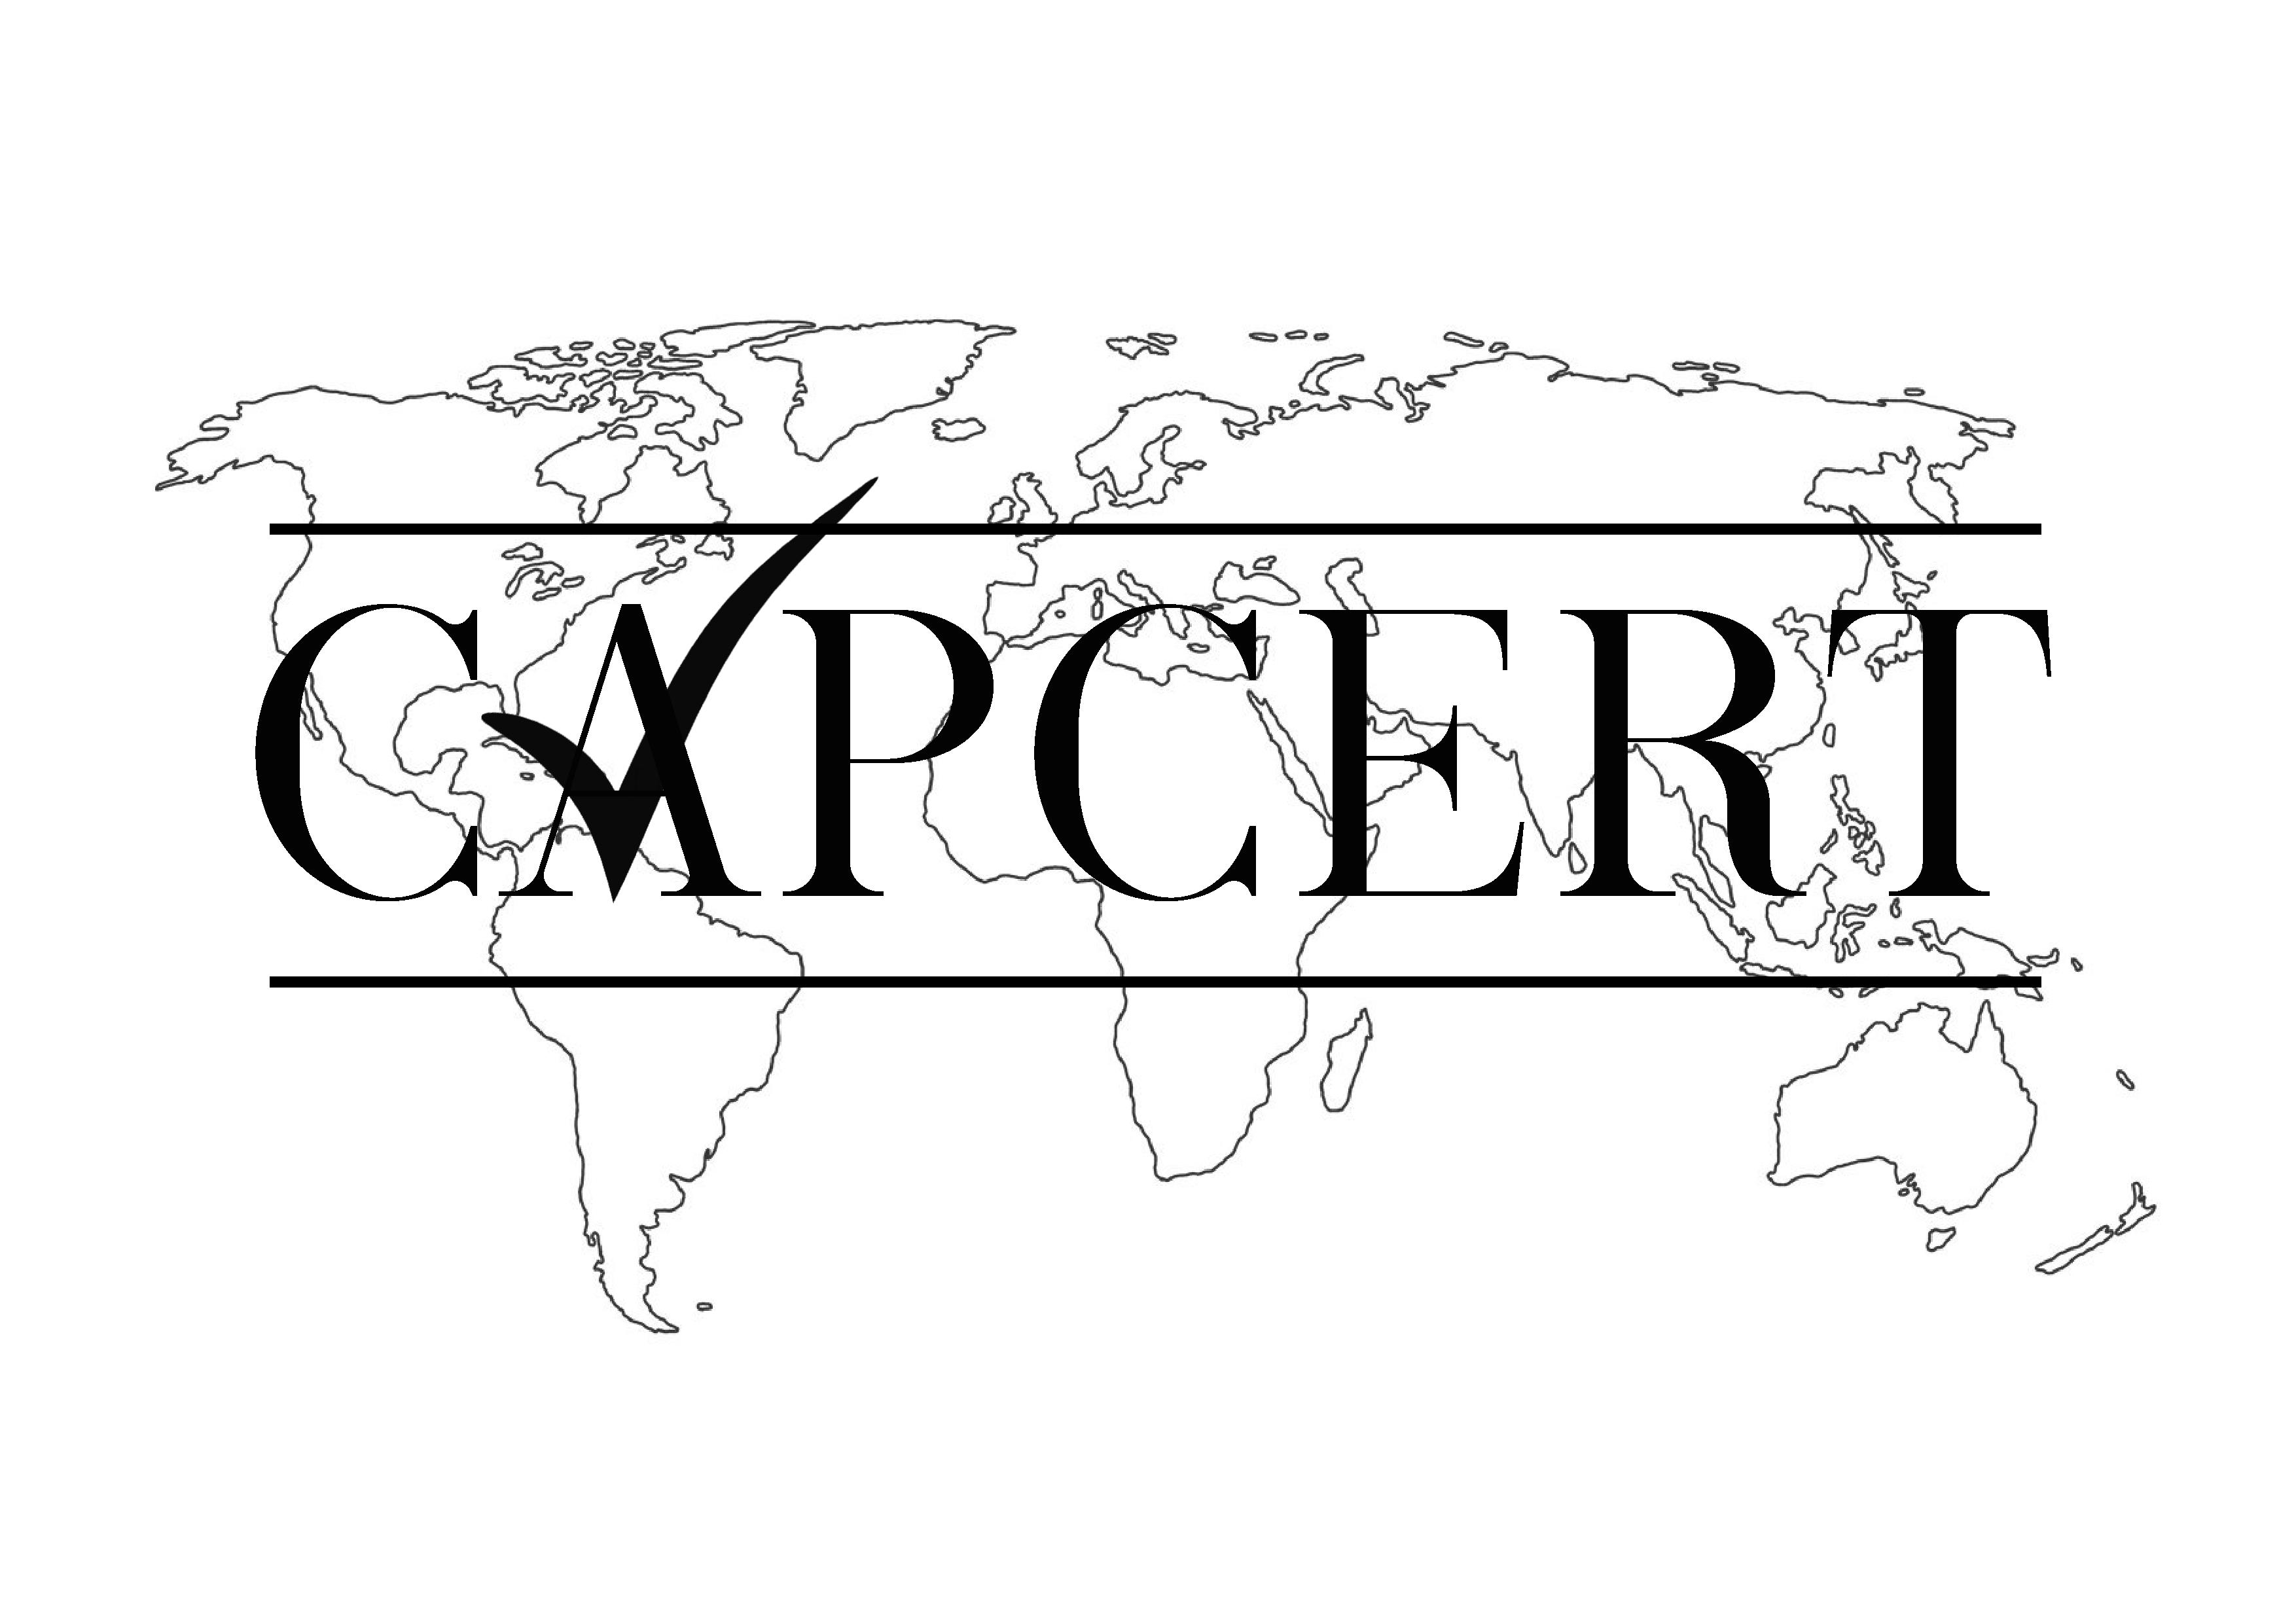 CAPCERT Logo